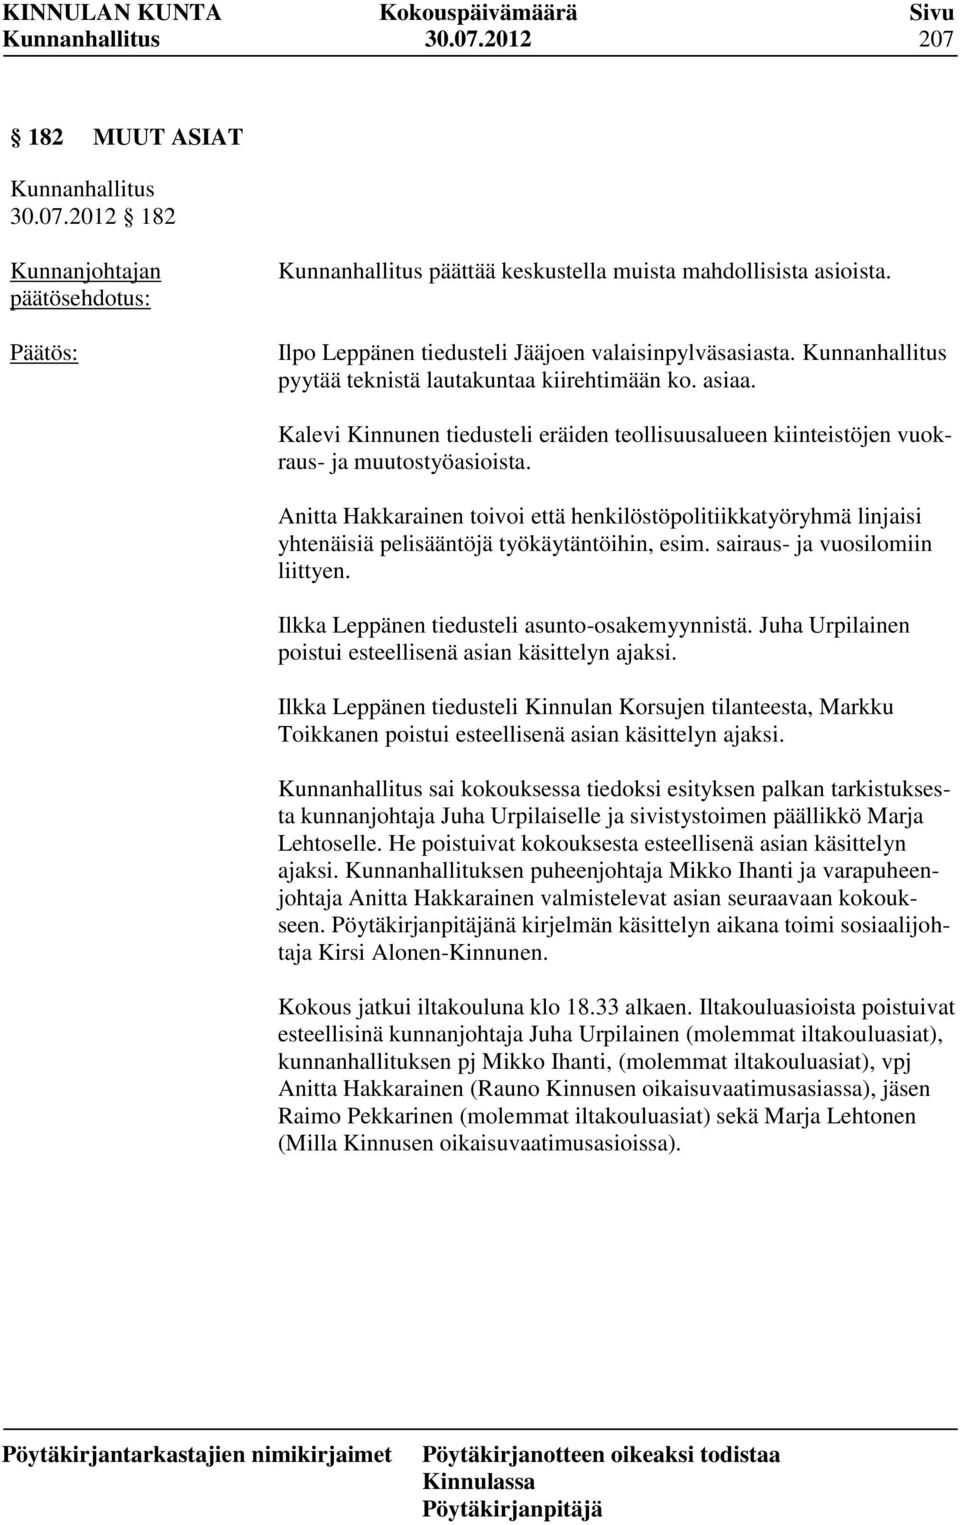 Anitta Hakkarainen toivoi että henkilöstöpolitiikkatyöryhmä linjaisi yhtenäisiä pelisääntöjä työkäytäntöihin, esim. sairaus- ja vuosilomiin liittyen. Ilkka Leppänen tiedusteli asunto-osakemyynnistä.